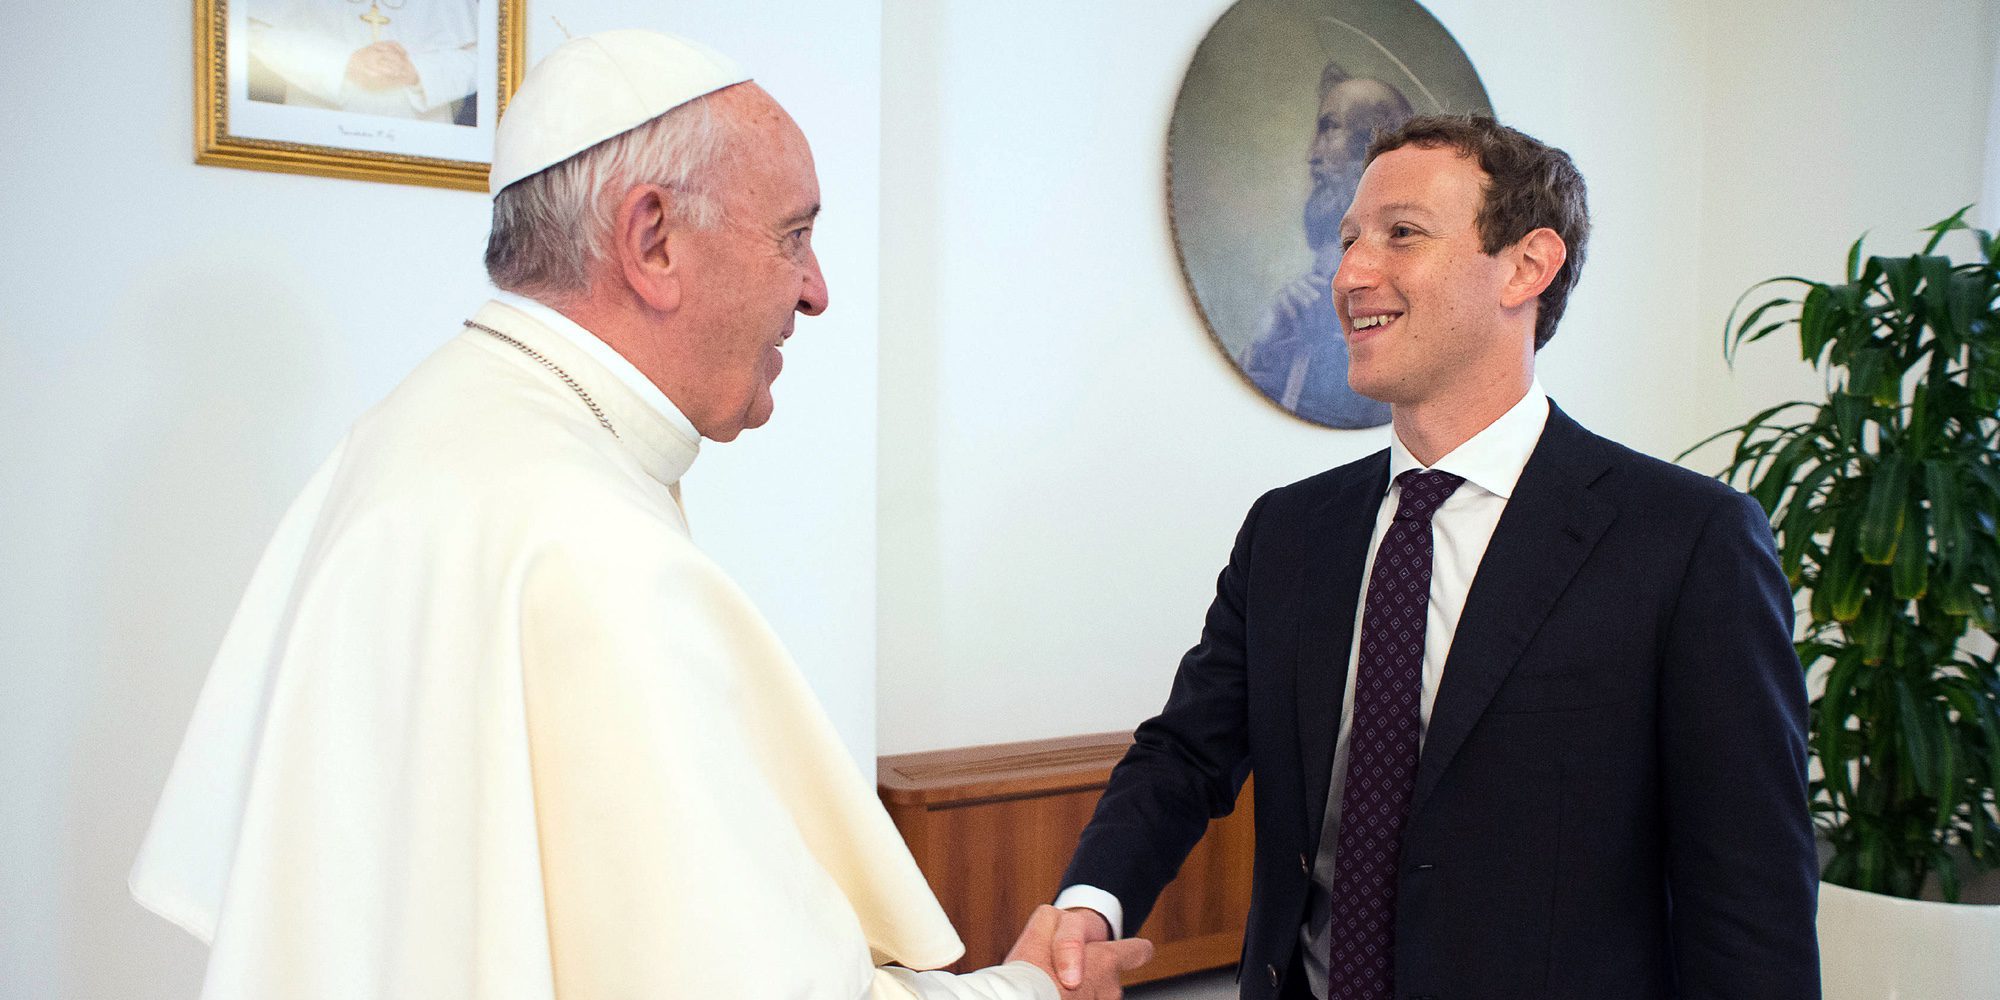 Mark Zuckerberg disfruta de Roma con Priscilla Chan tras su visita al Papa Francisco